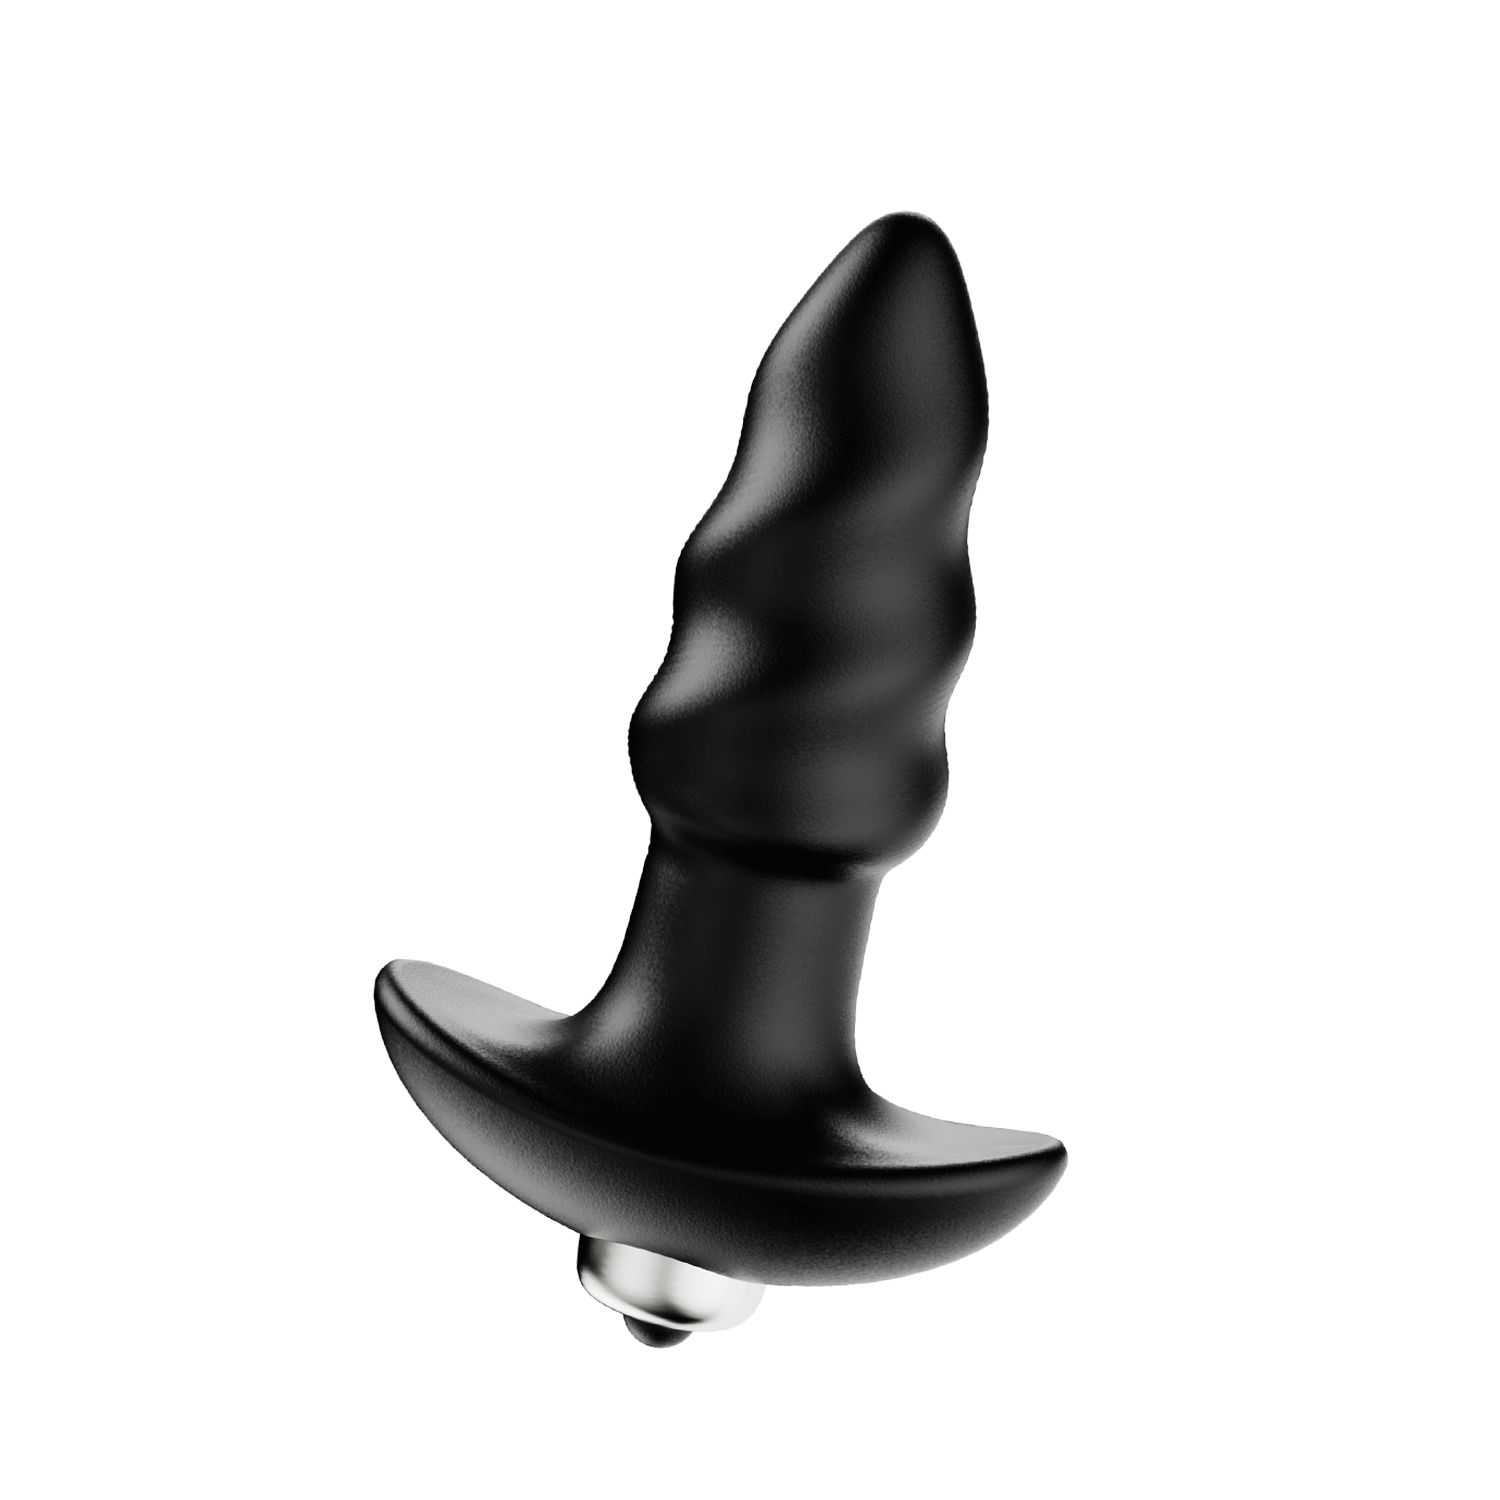 Tire-bouchon - Plug anal vibrant pour jouet sexuel anal